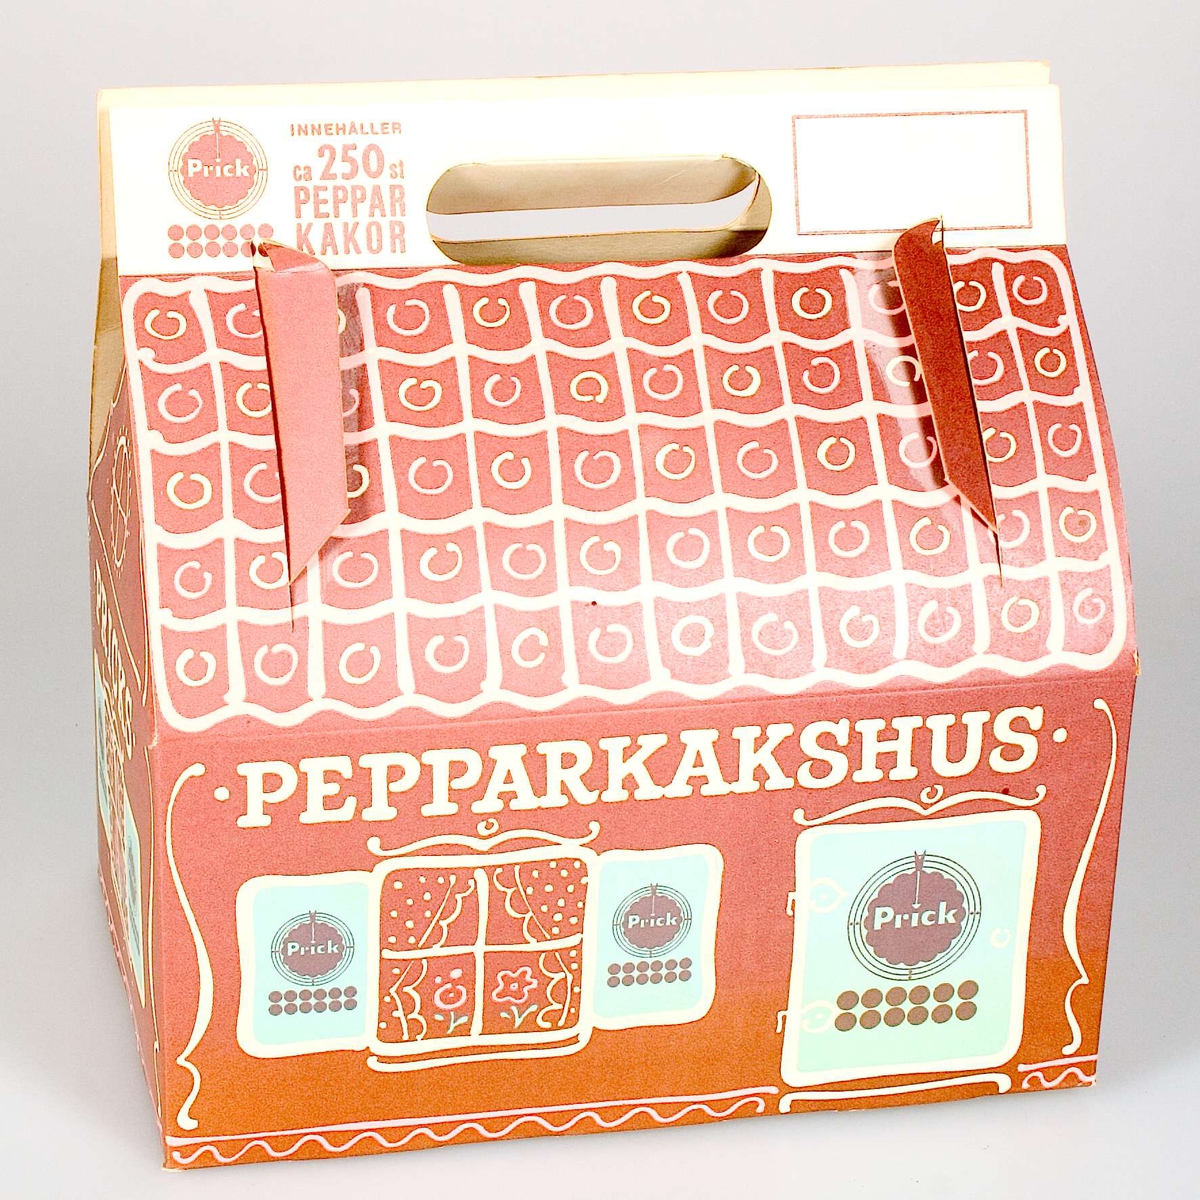 Pepparkaksförpackning av papp, utformad som ett pepparkakshus. Tryckt dekor i brunt, rosa och blått. Logotypen Prick på varje sida av förpackningen samt texten: PRICKS PEPPARKAKSHUS, INNEHÅLLER ca 250 PEPPARKAKOR.